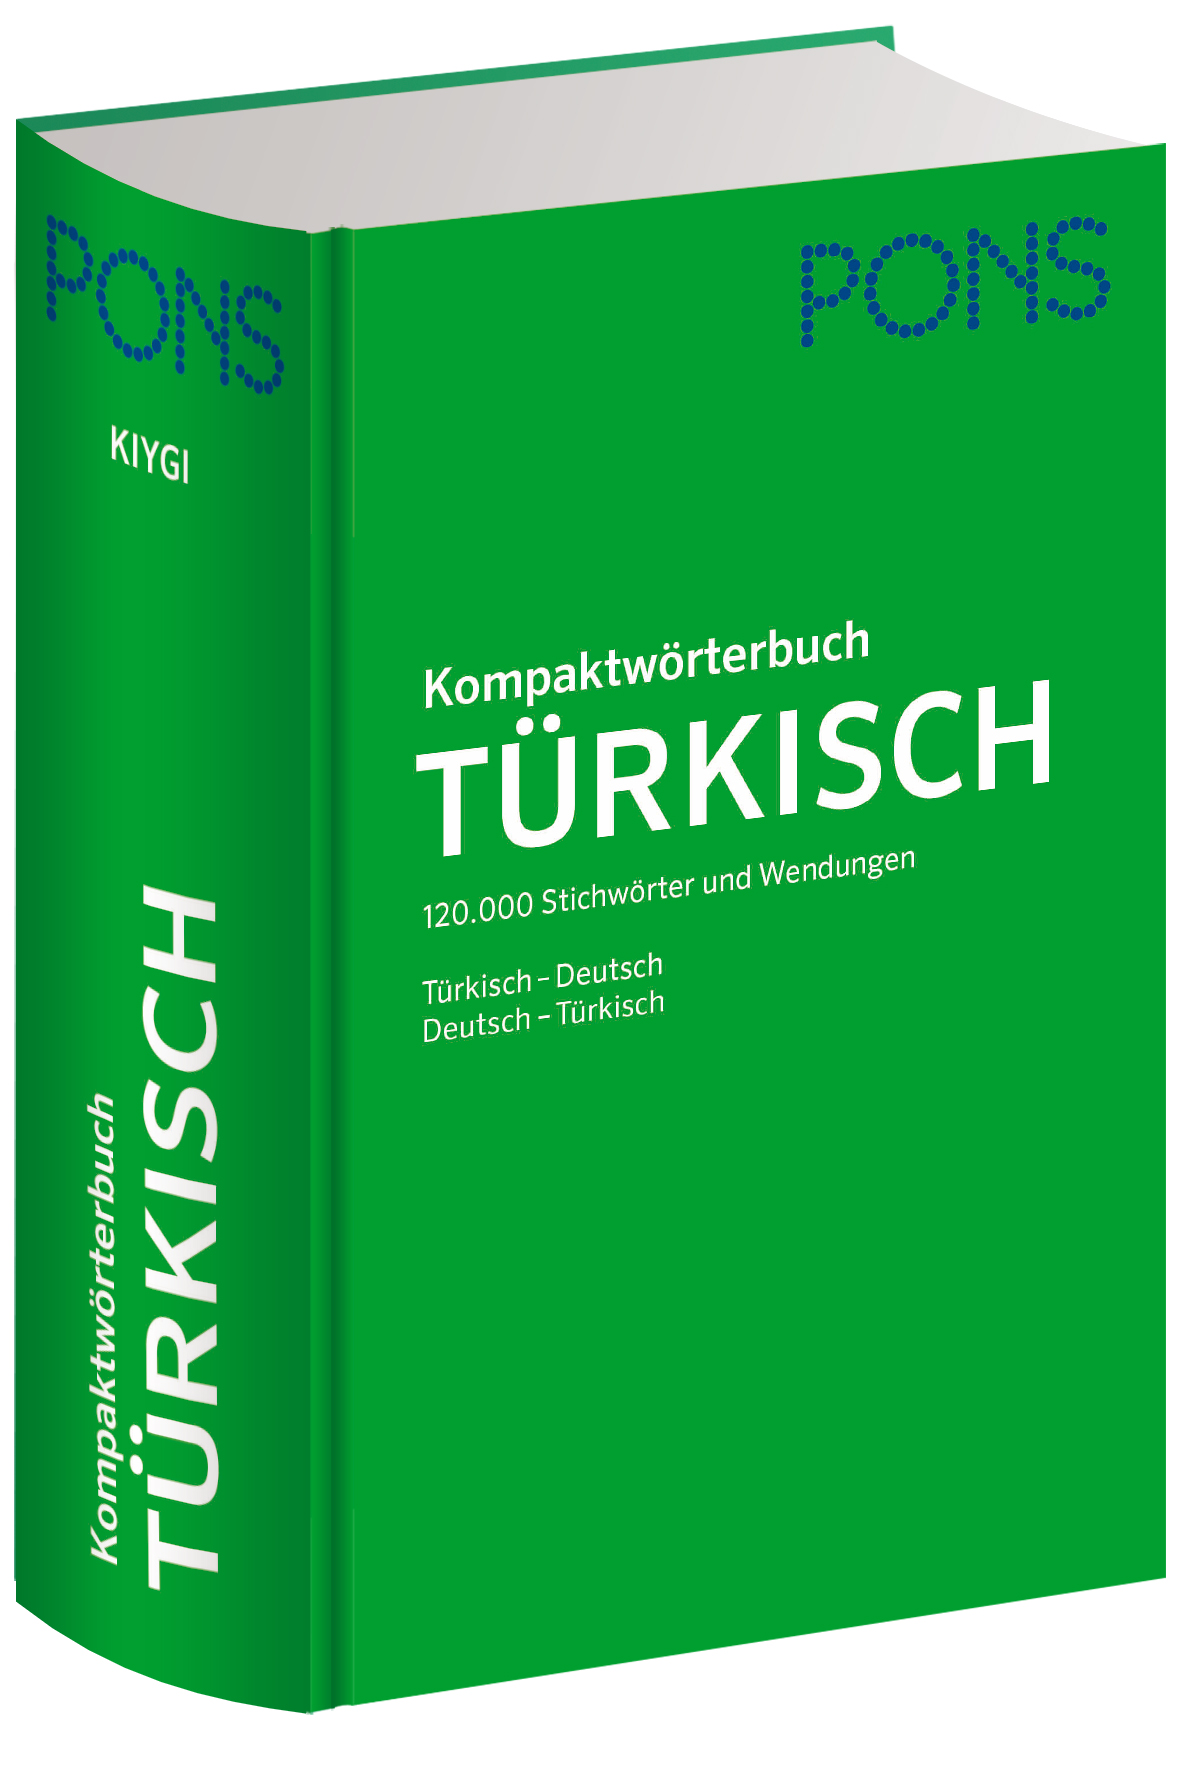 PONS Kompaktwörterbuch Türkisch